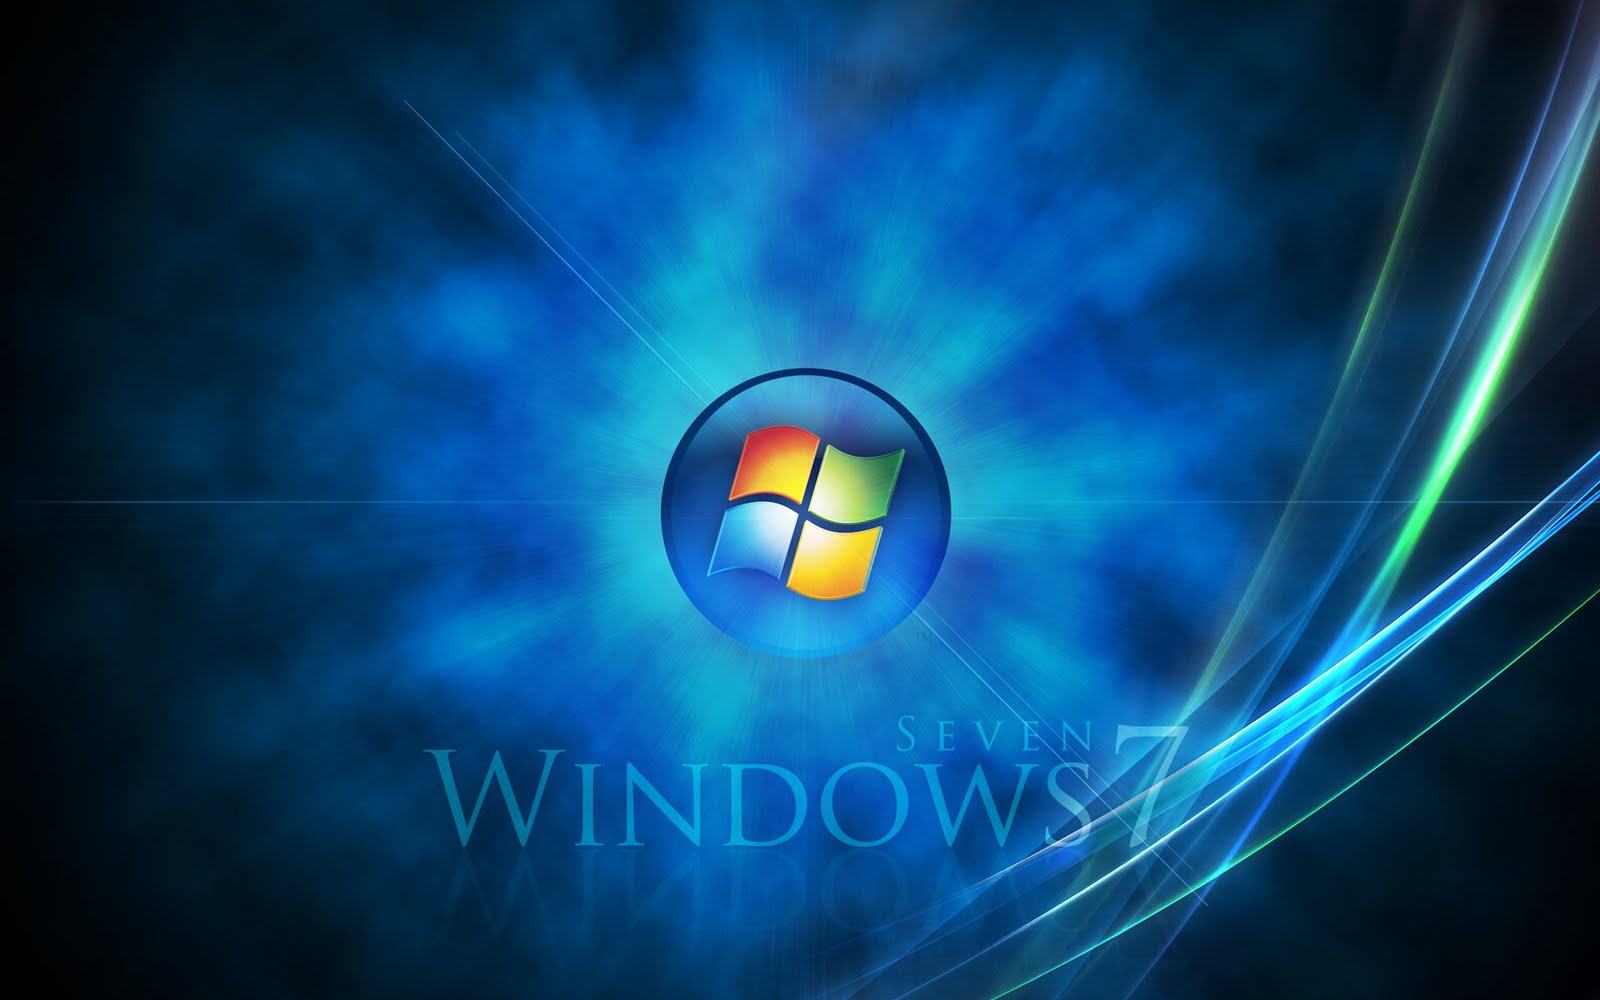 Desktop Background For Windows 7 Ultimate Free Download